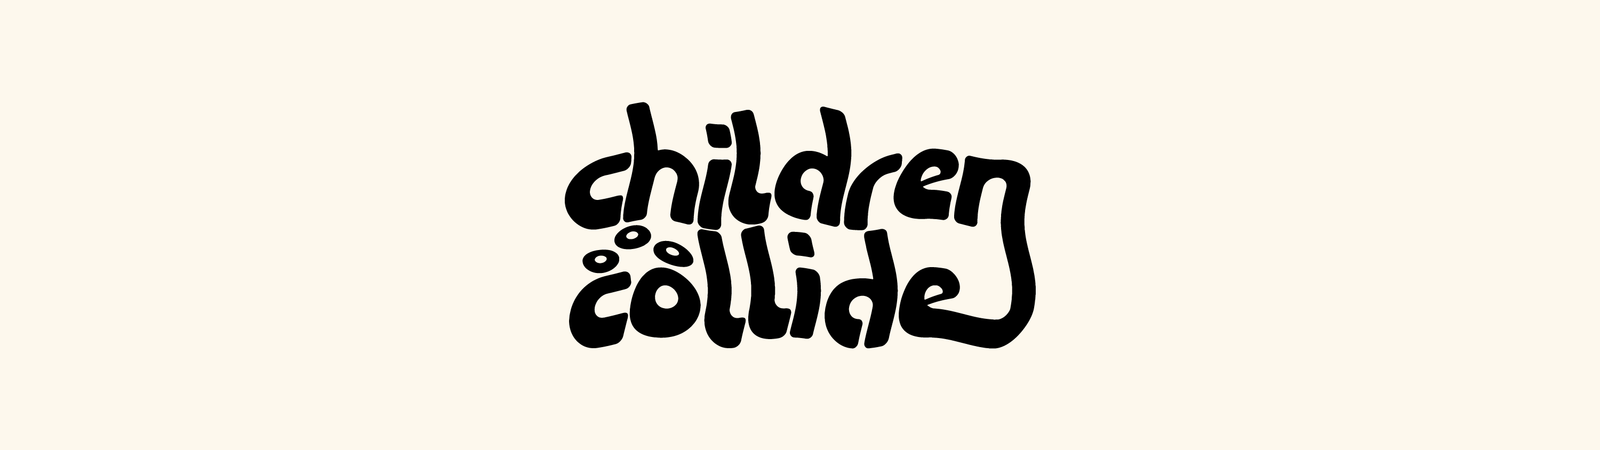 Children Collide